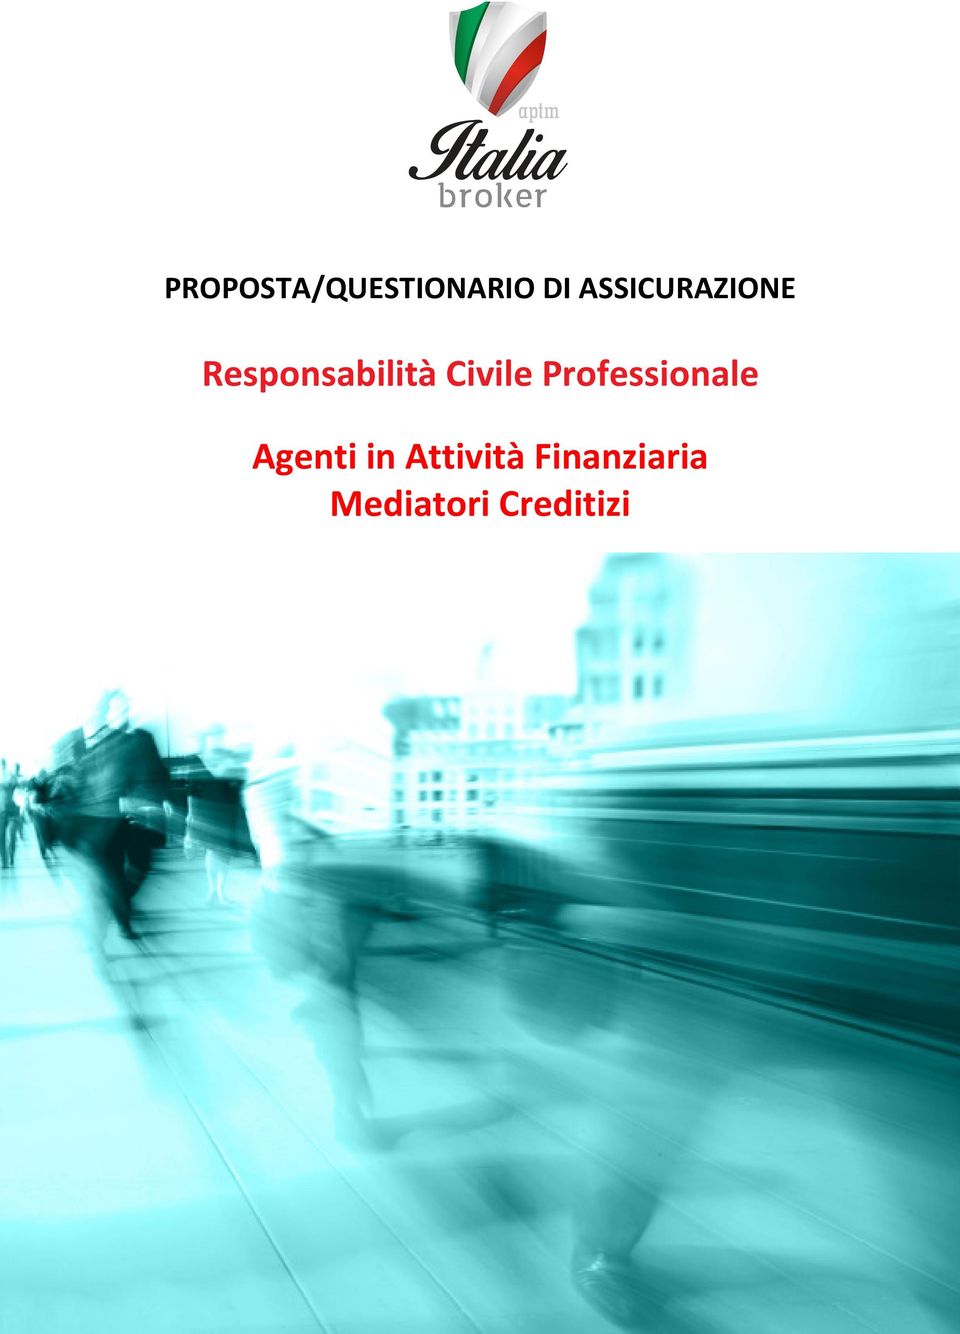 Creditizi Proposal Form Polizza R.C. Professionale Agenti in